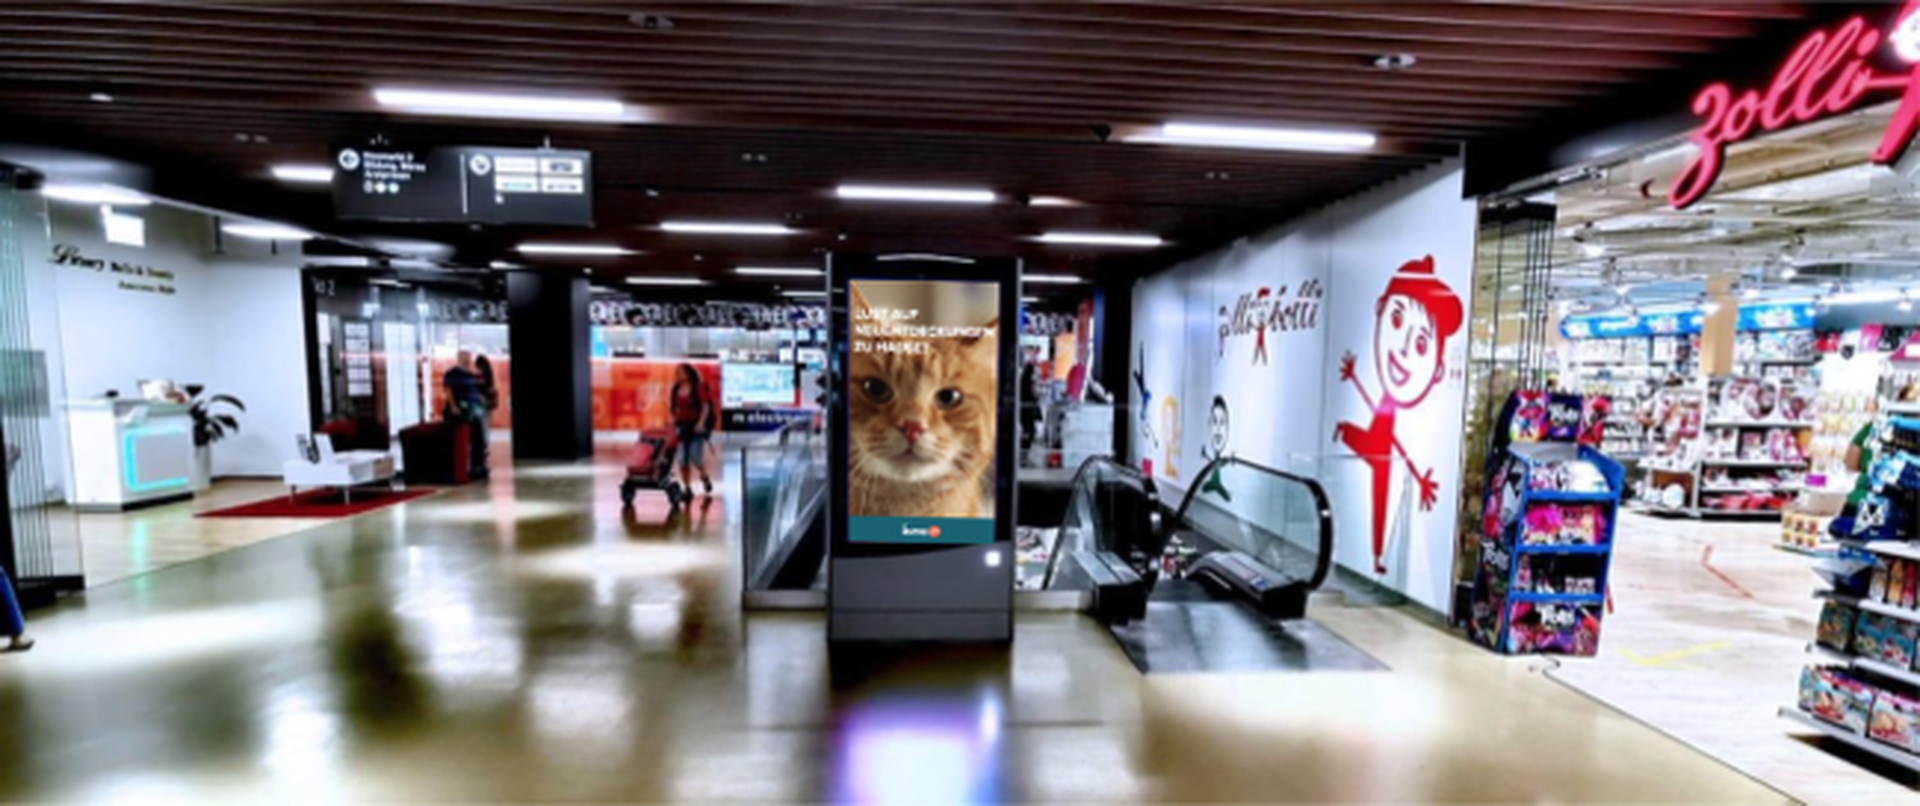 DOOH Screen mit home24 Werbung in einem Einkaufscentrum